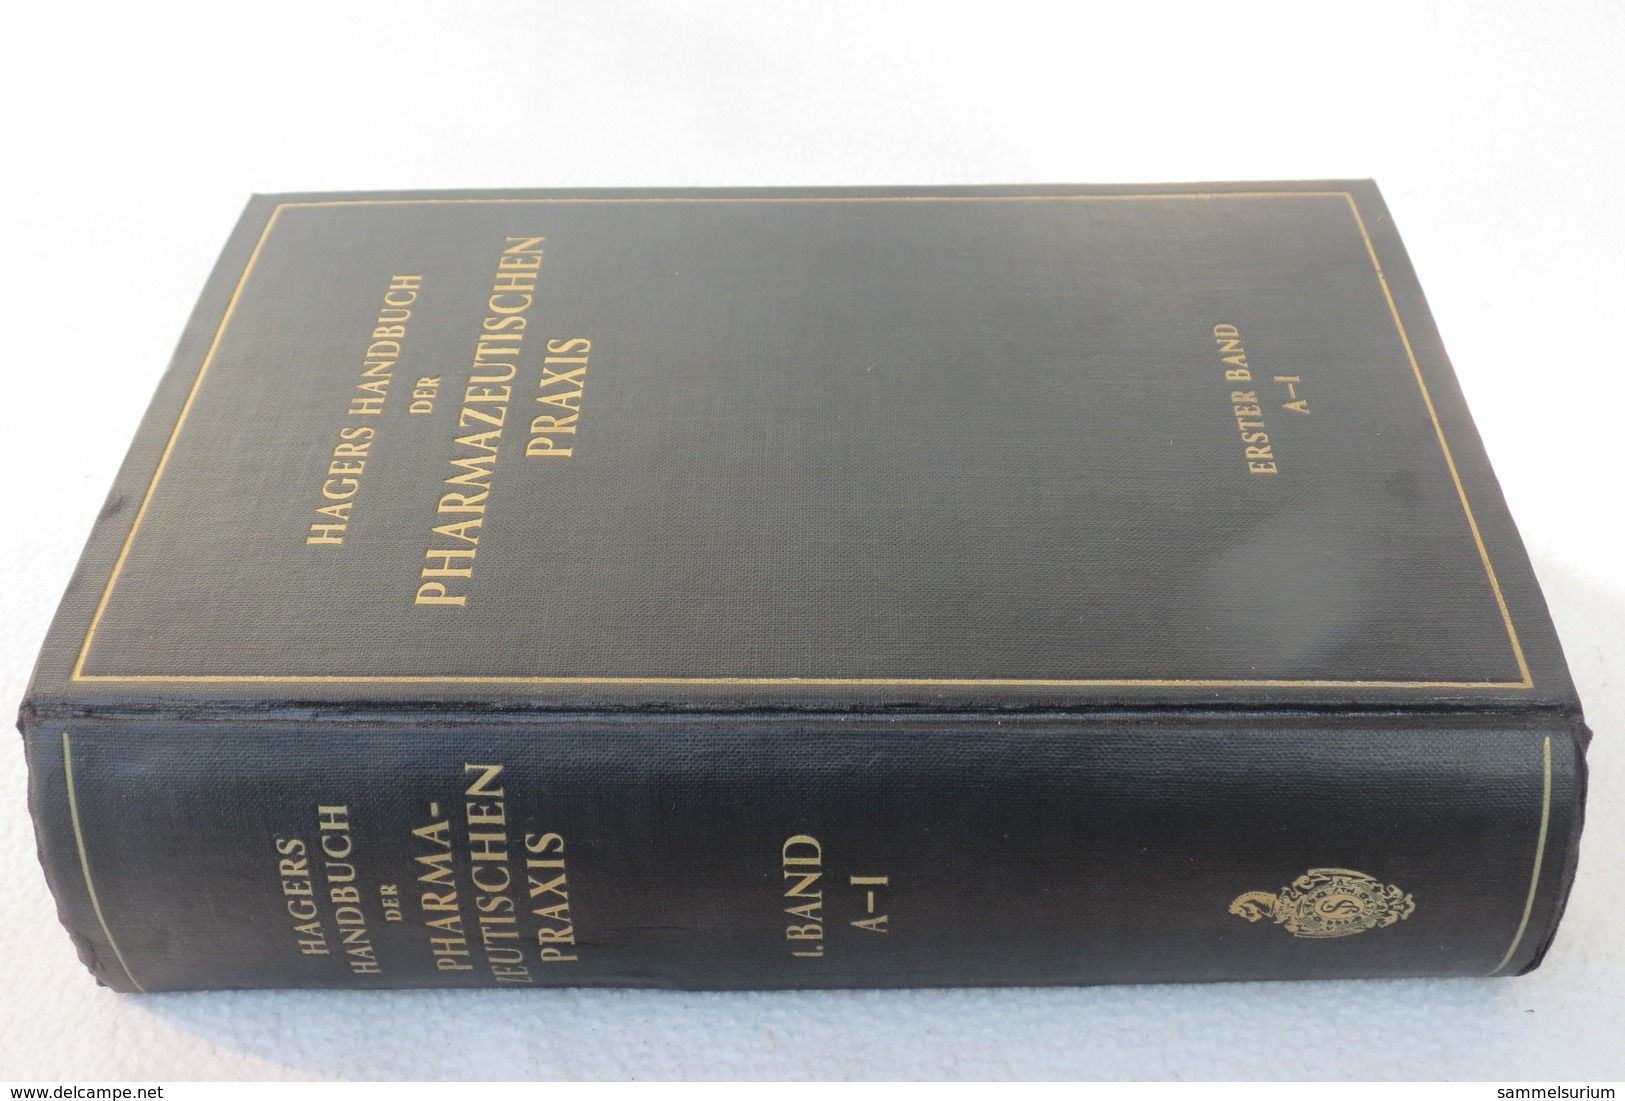 Hagers Handbuch der Pharmazeutischen Praxis von 1949, Band 1 (A-I) und 2 (K-Z)